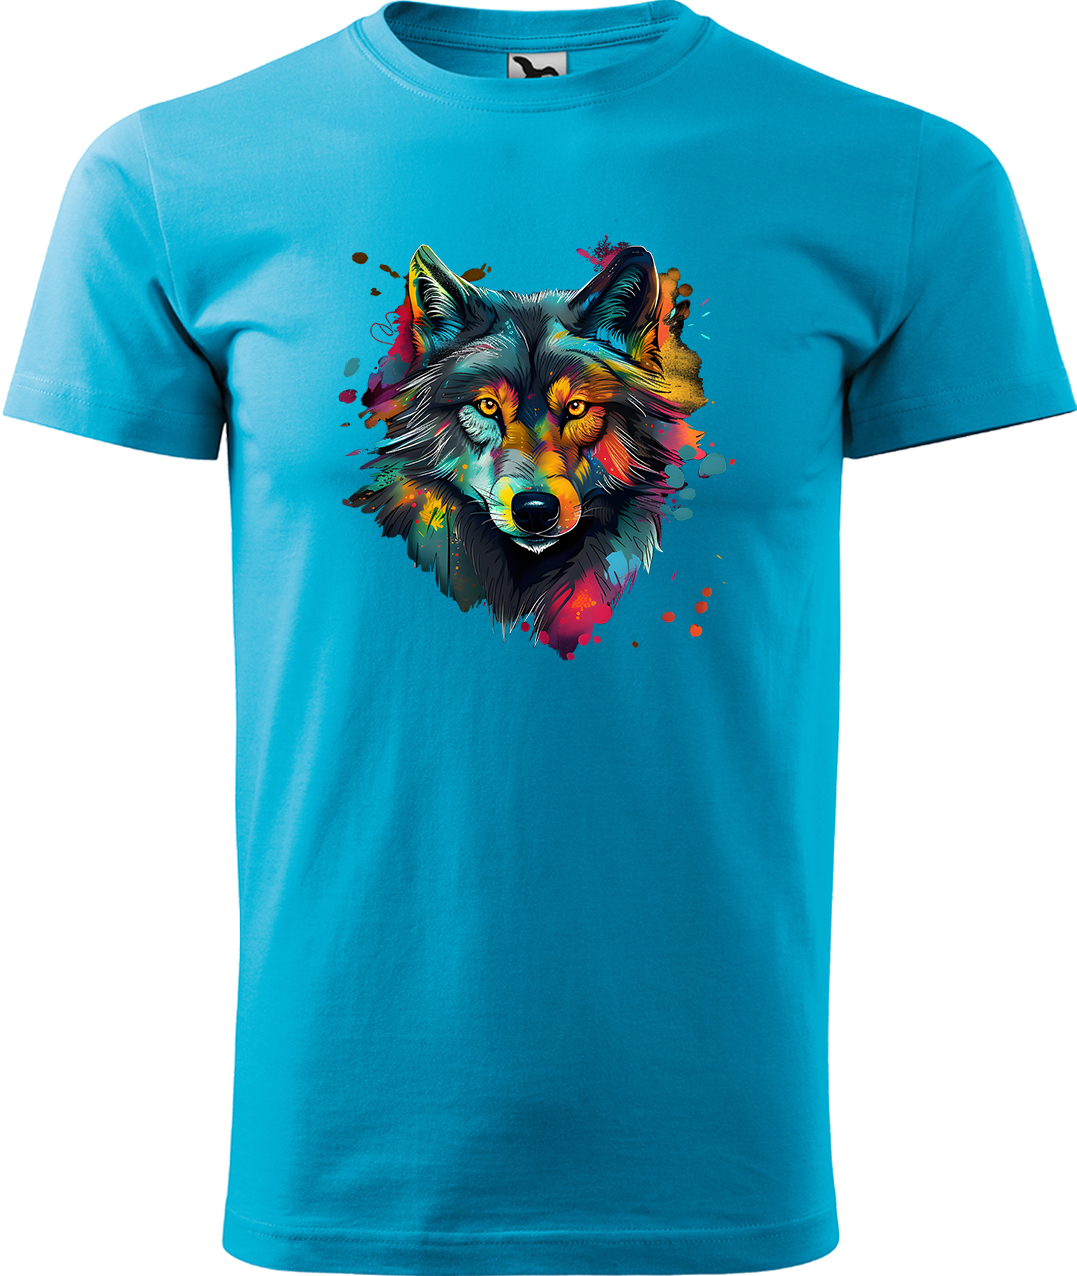 Pánské tričko s vlkem - Malovaný vlk Velikost: XL, Barva: Tyrkysová (44), Střih: pánský